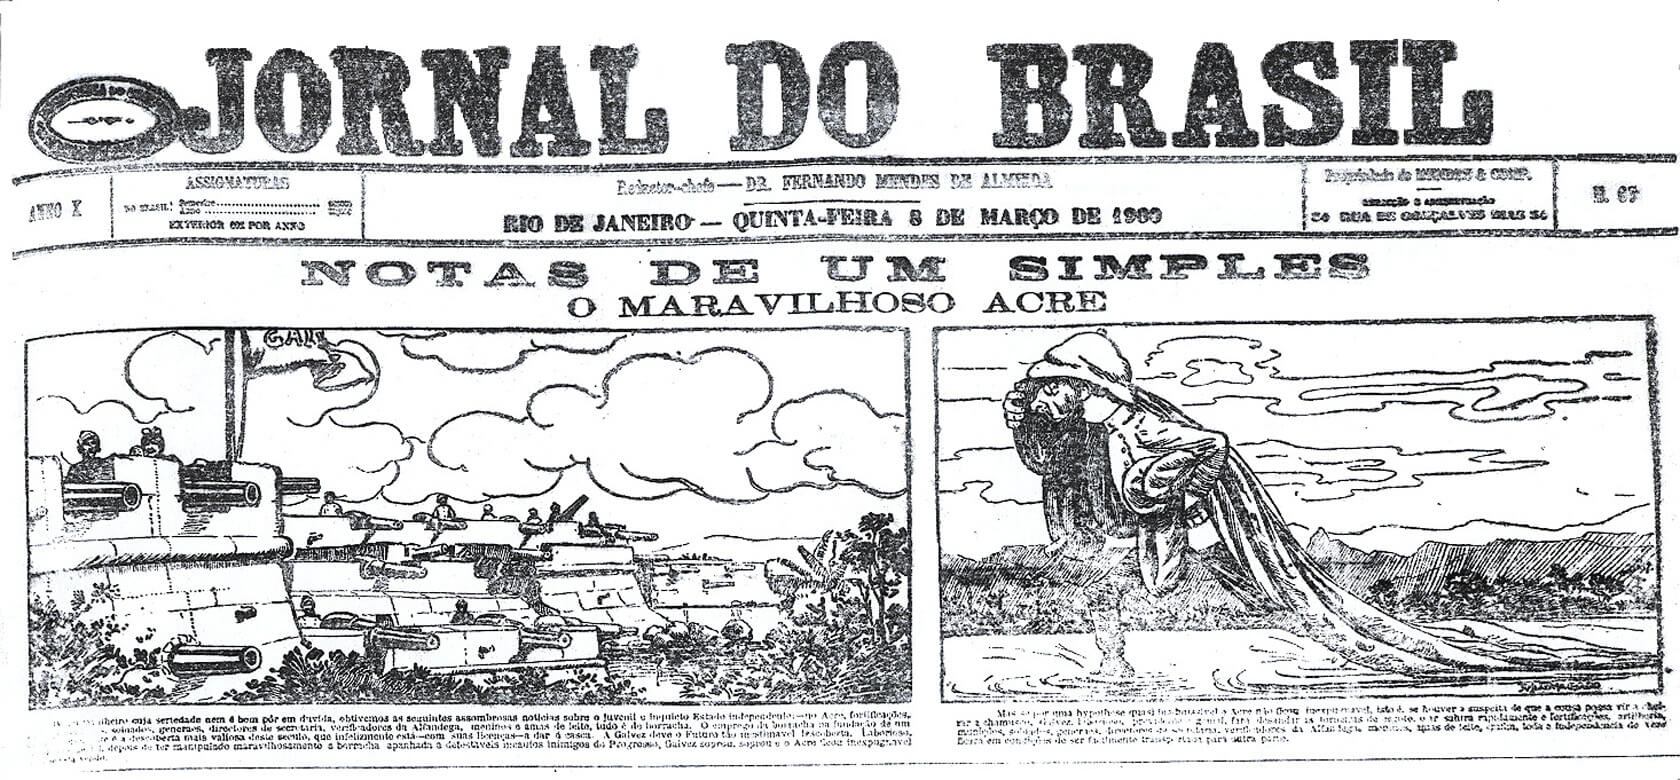 Charge tratando jocosamente da República do Acre, publicada no Jornal do Brasil, Rio de Janeiro, em 8 de março de 1899